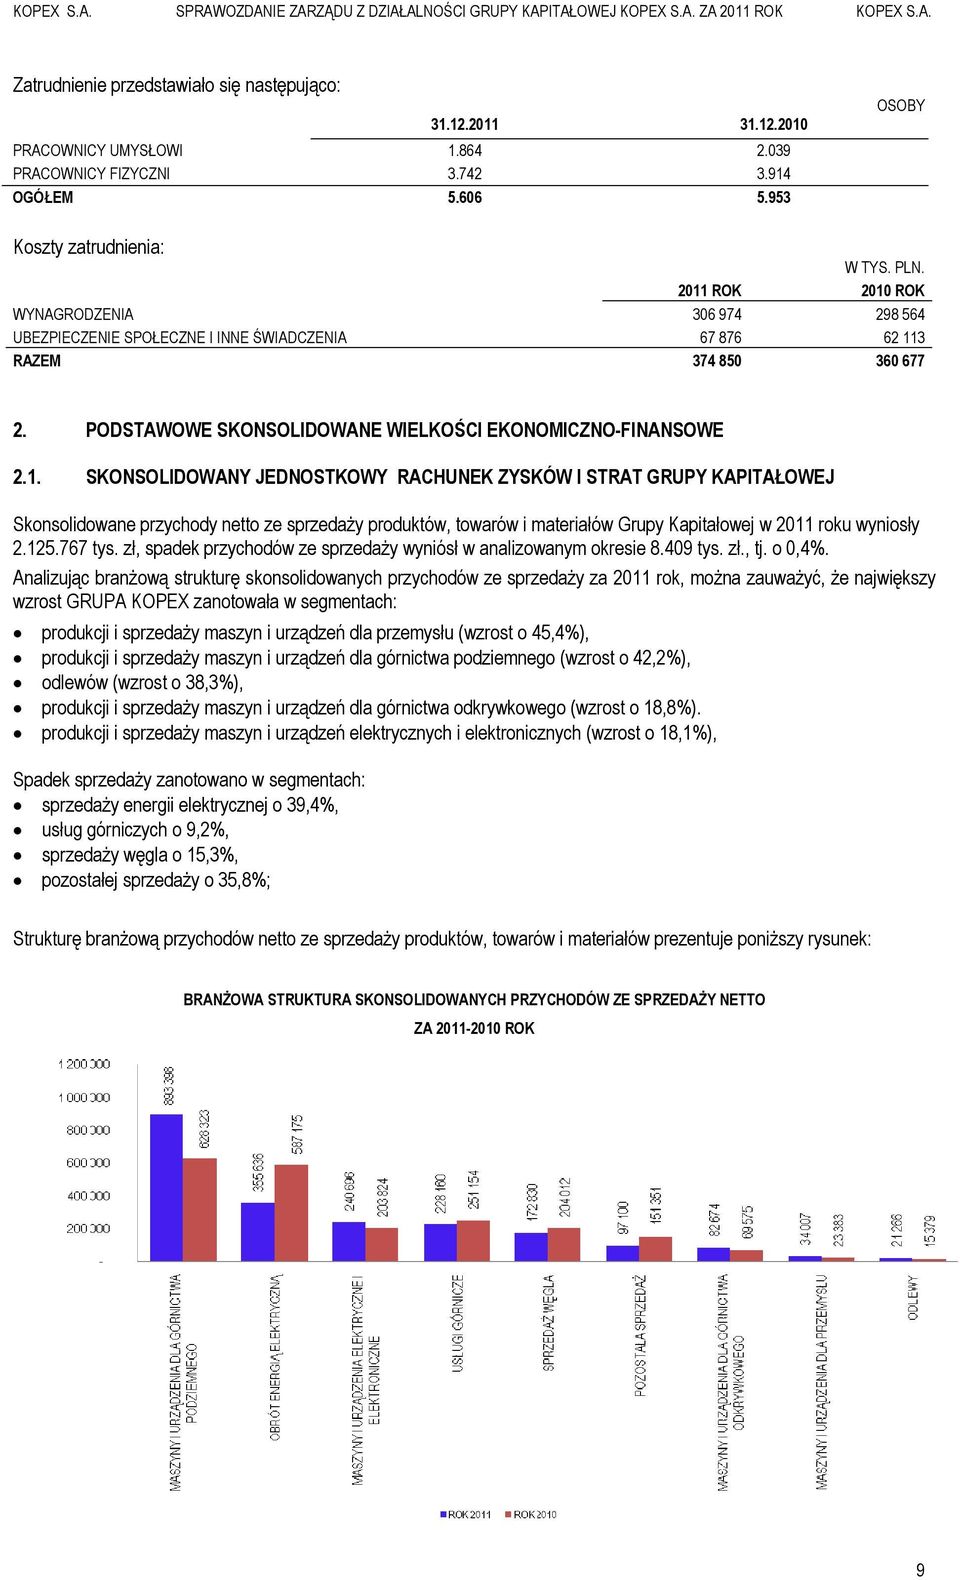 125.767 tys. zł, spadek przychodów ze sprzedaży wyniósł w analizowanym okresie 8.409 tys. zł., tj. o 0,4%.